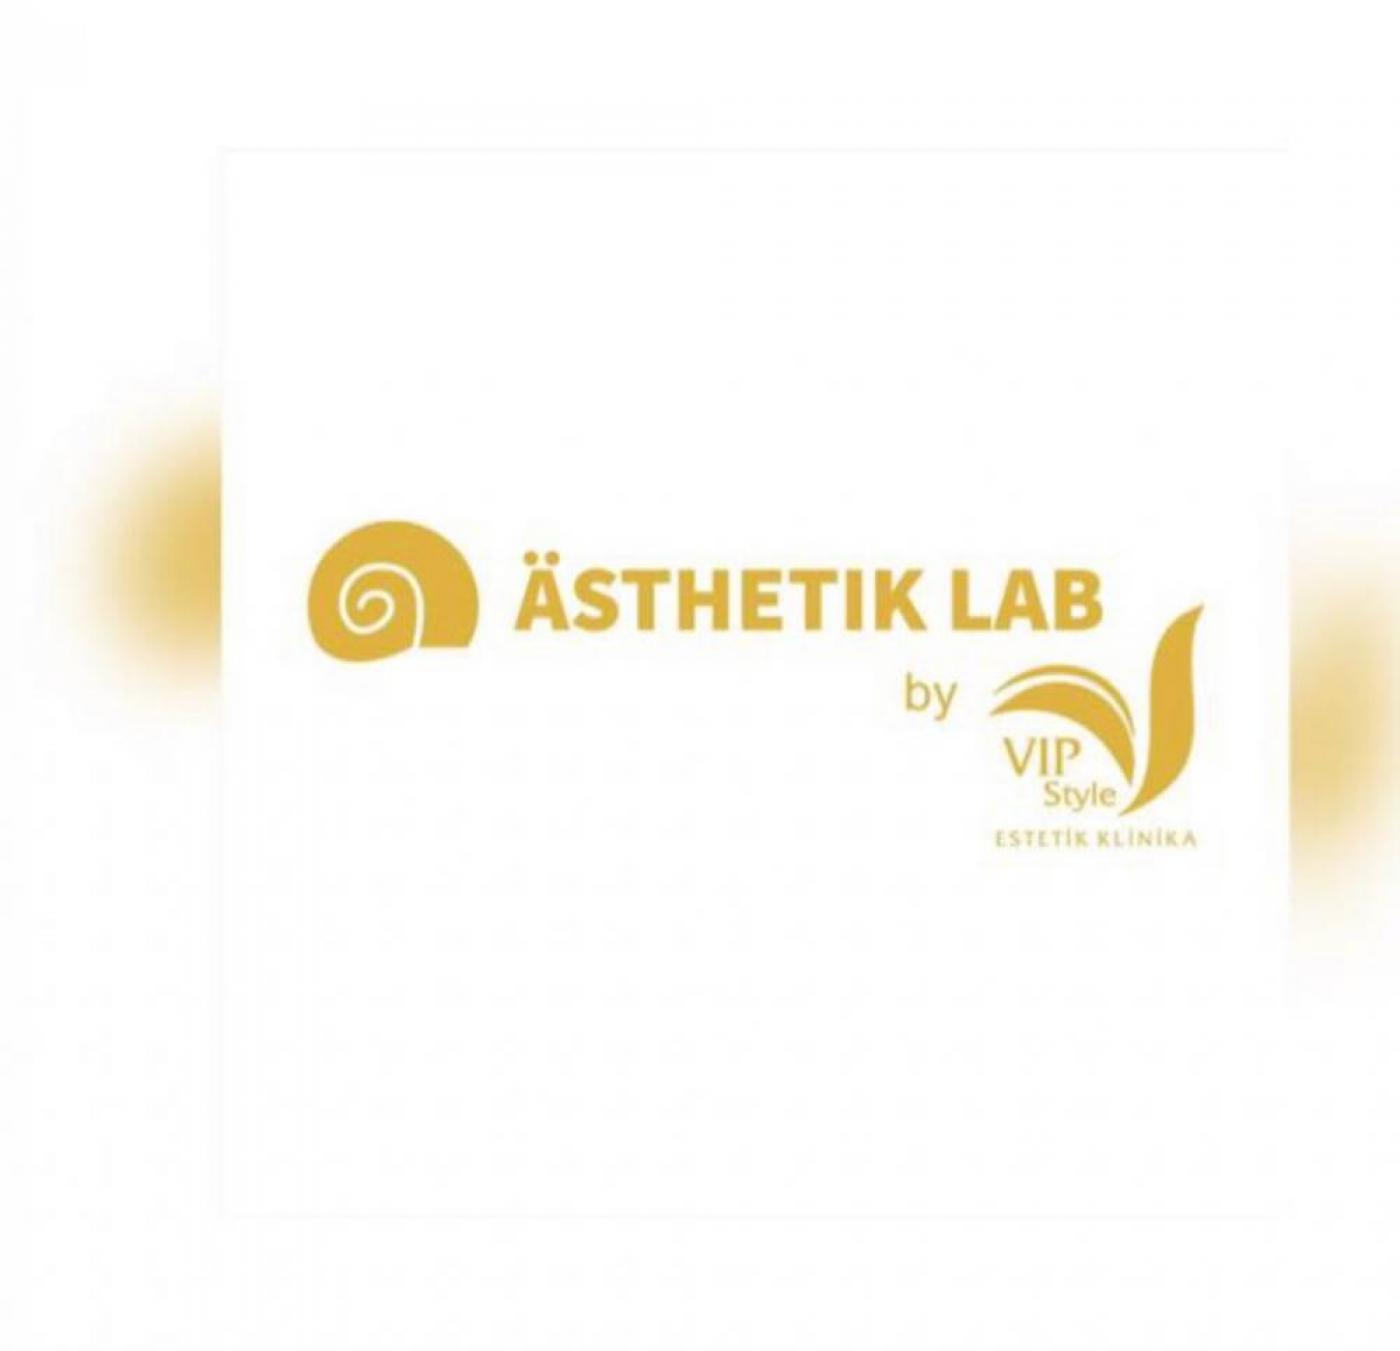 Asthetik Lab